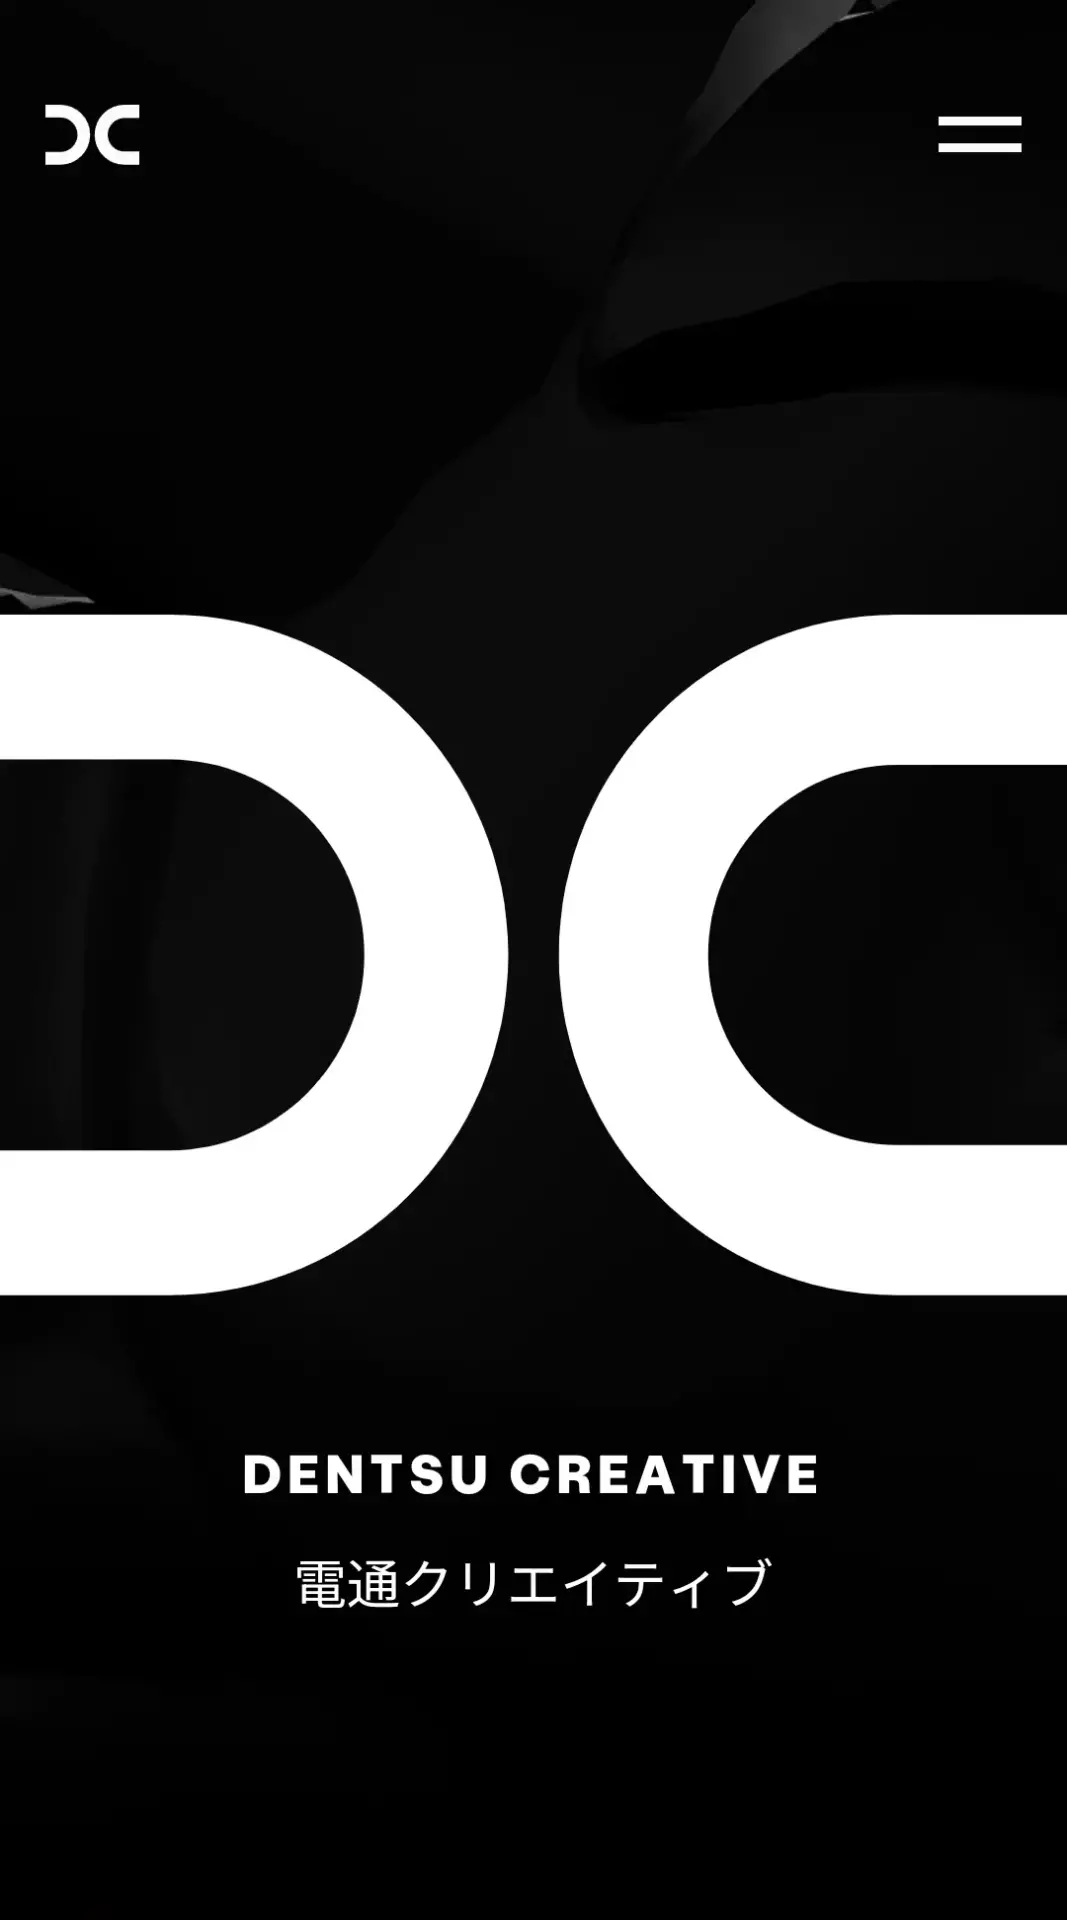 L'agence créative d'origine japonaise Dentsu Creative utilise parfaitement à son avantage le responsive pour son site internet